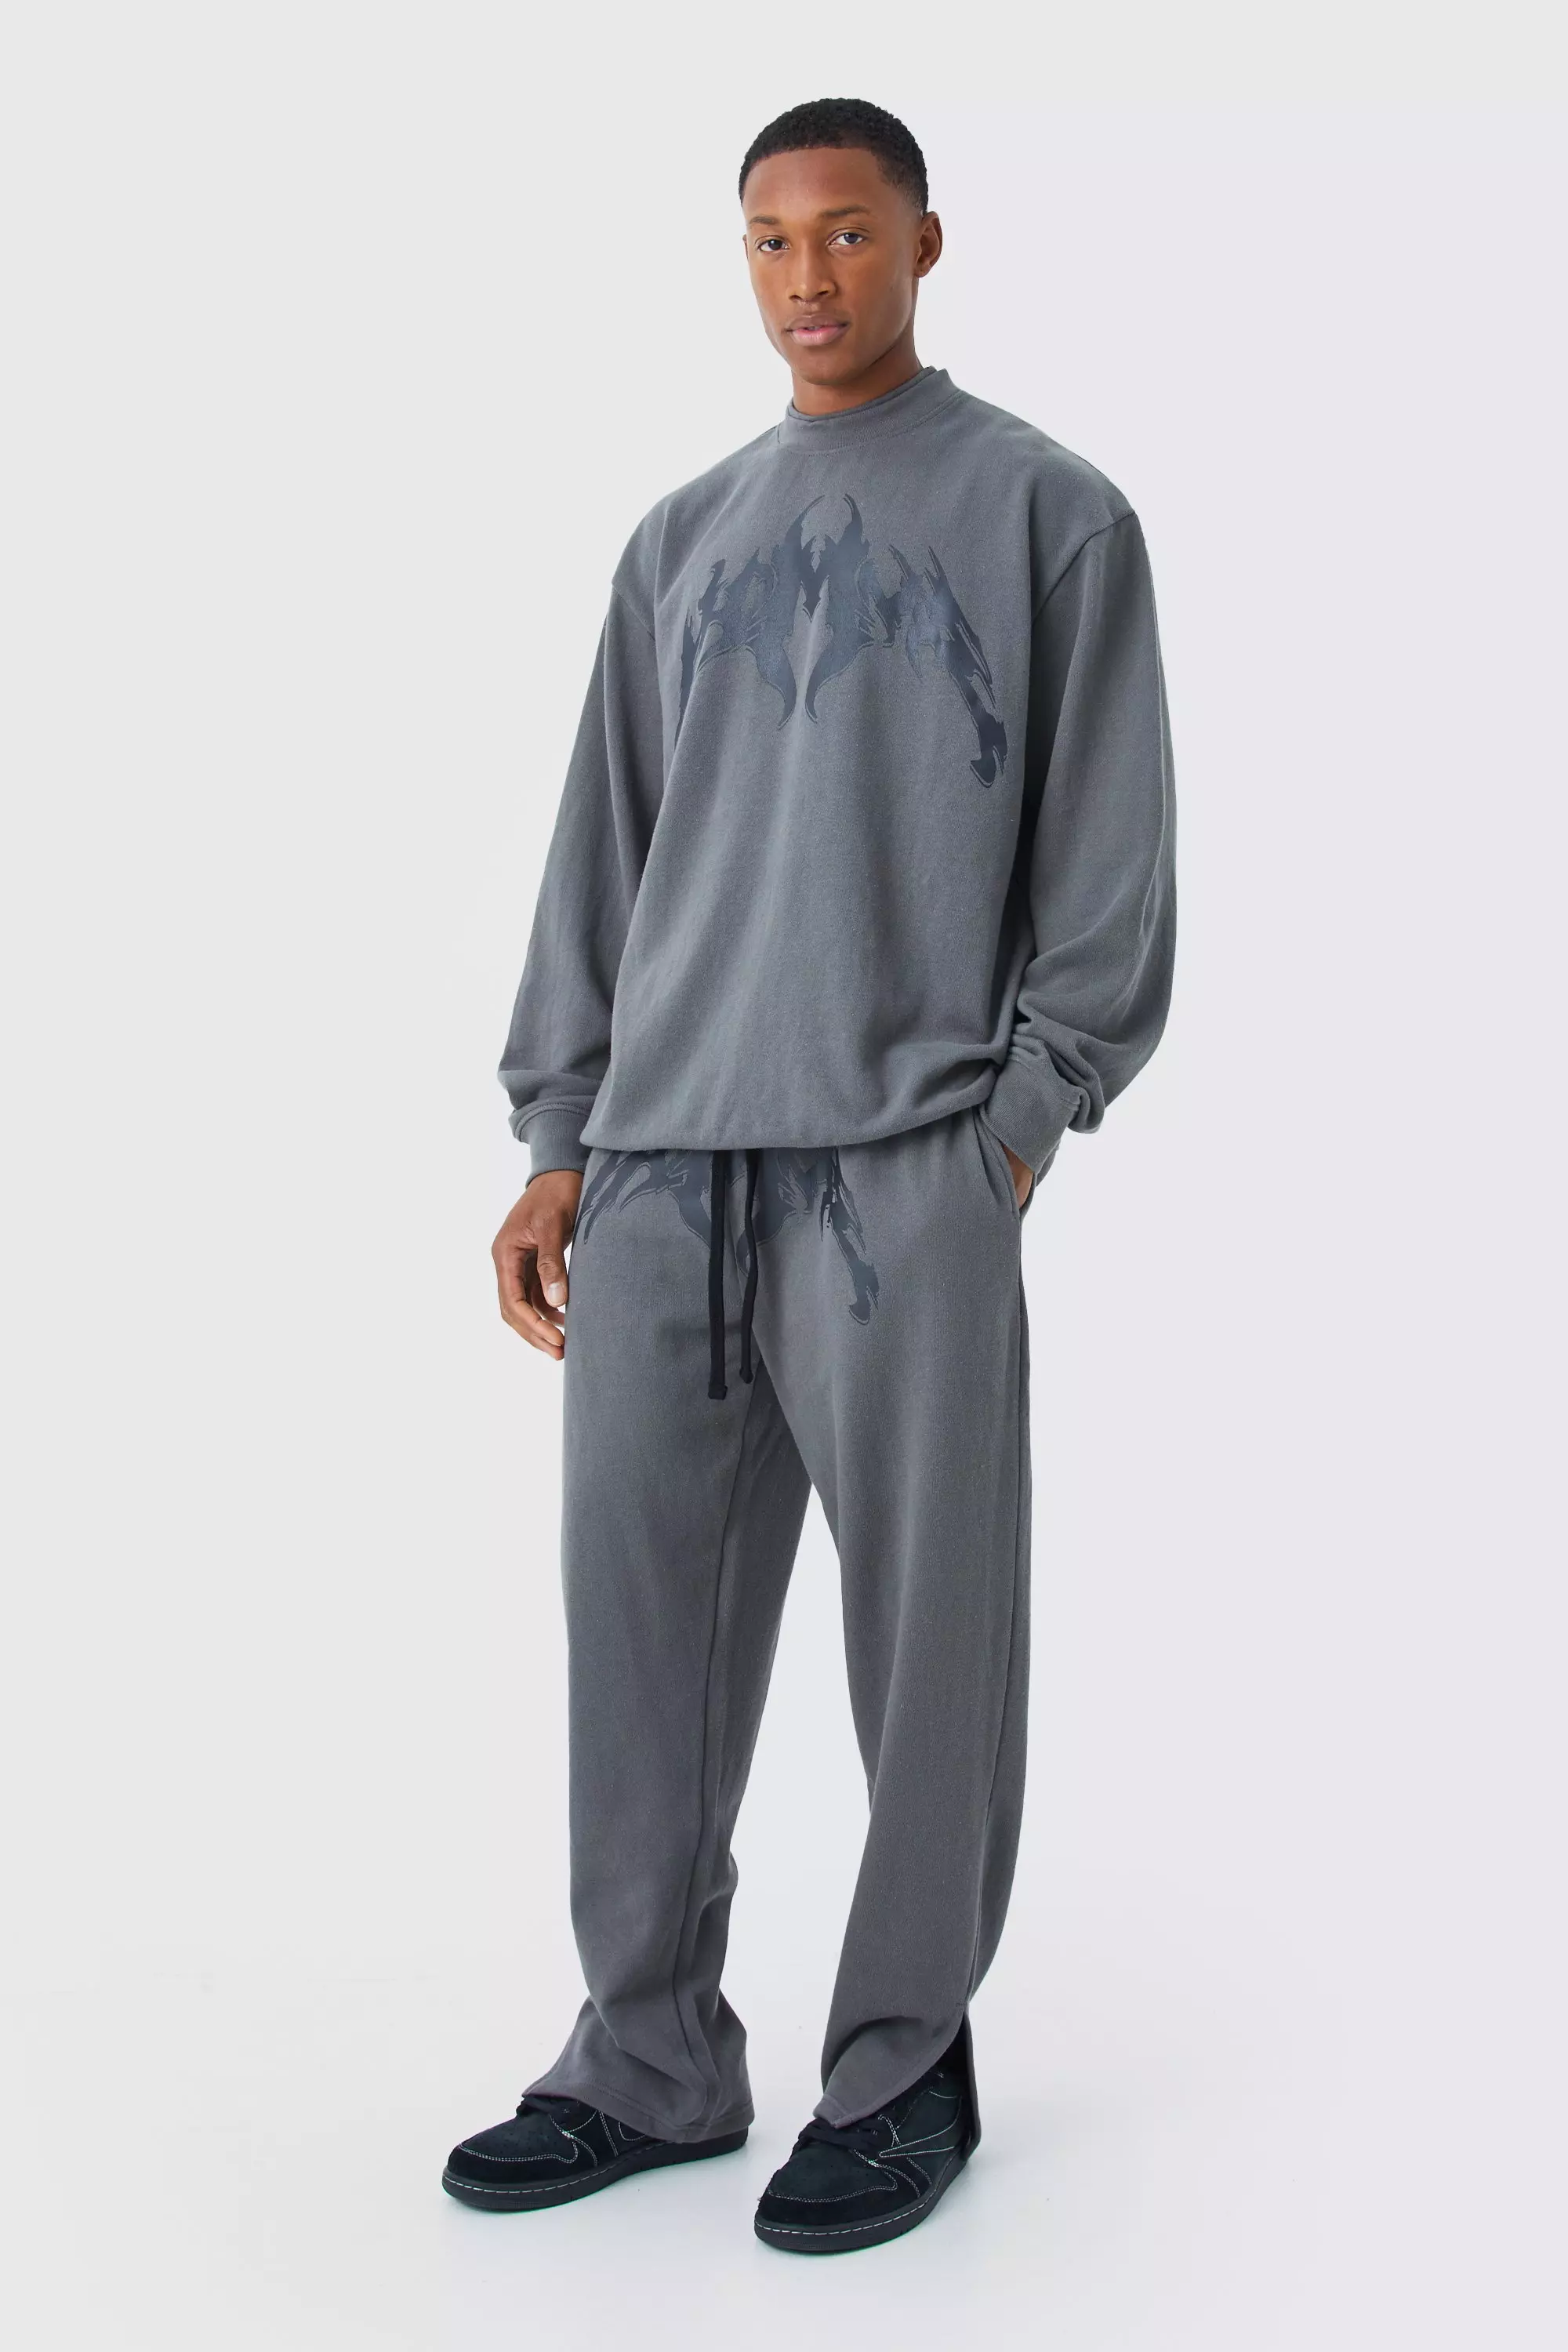 Charcoal Grey Oversized Double Neck Sweatshirt Tracksuit